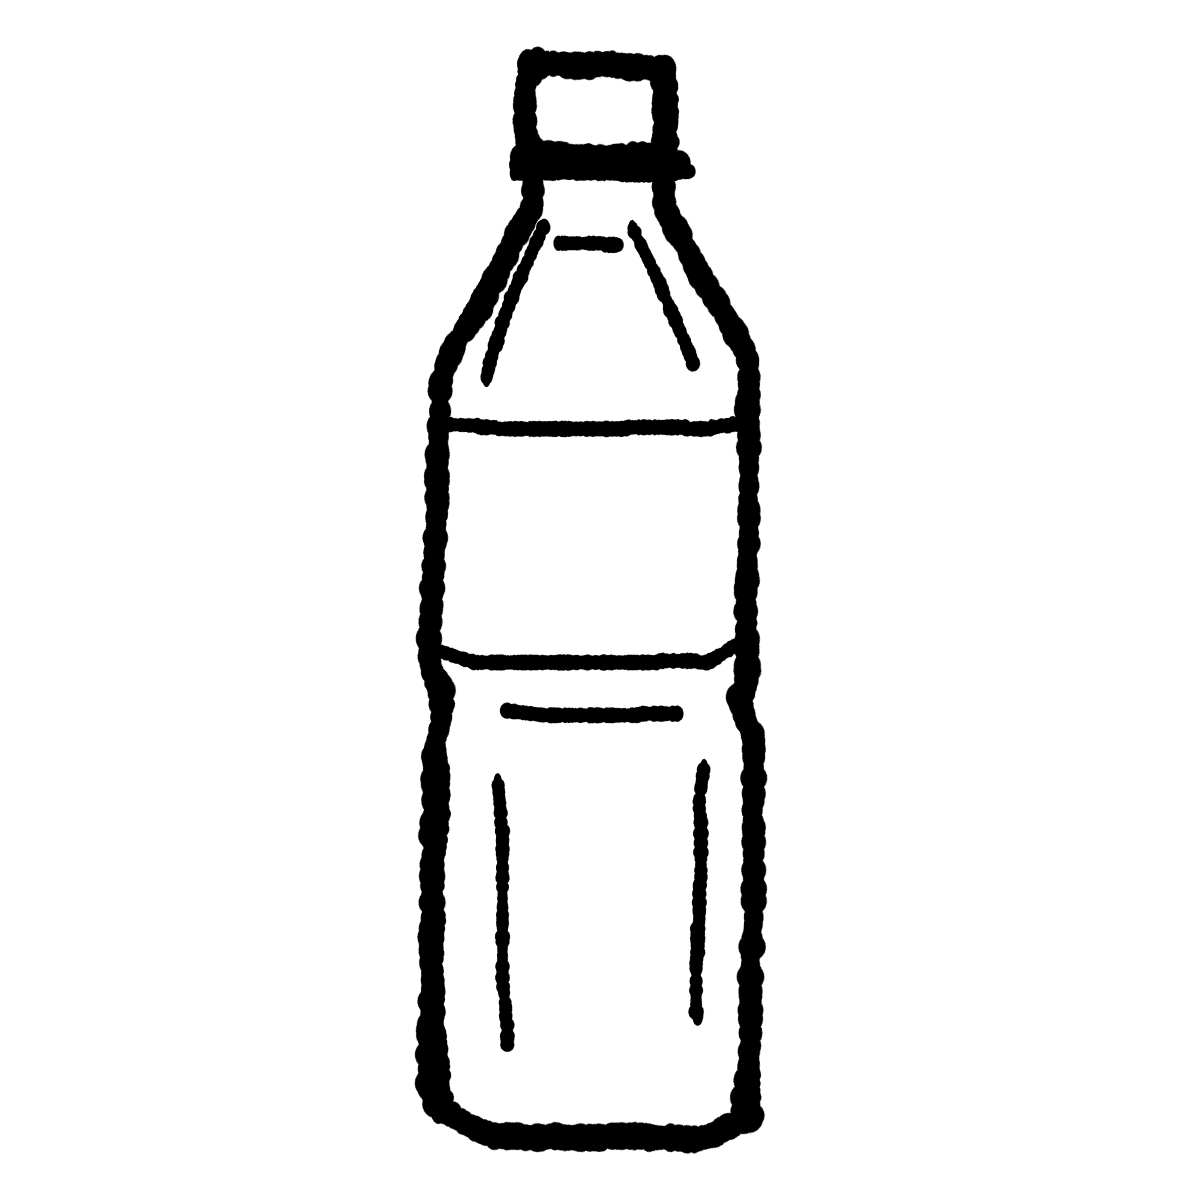 ペットボトル（小／四角型）のイラスト / Pet bottles (small/square) Illustration